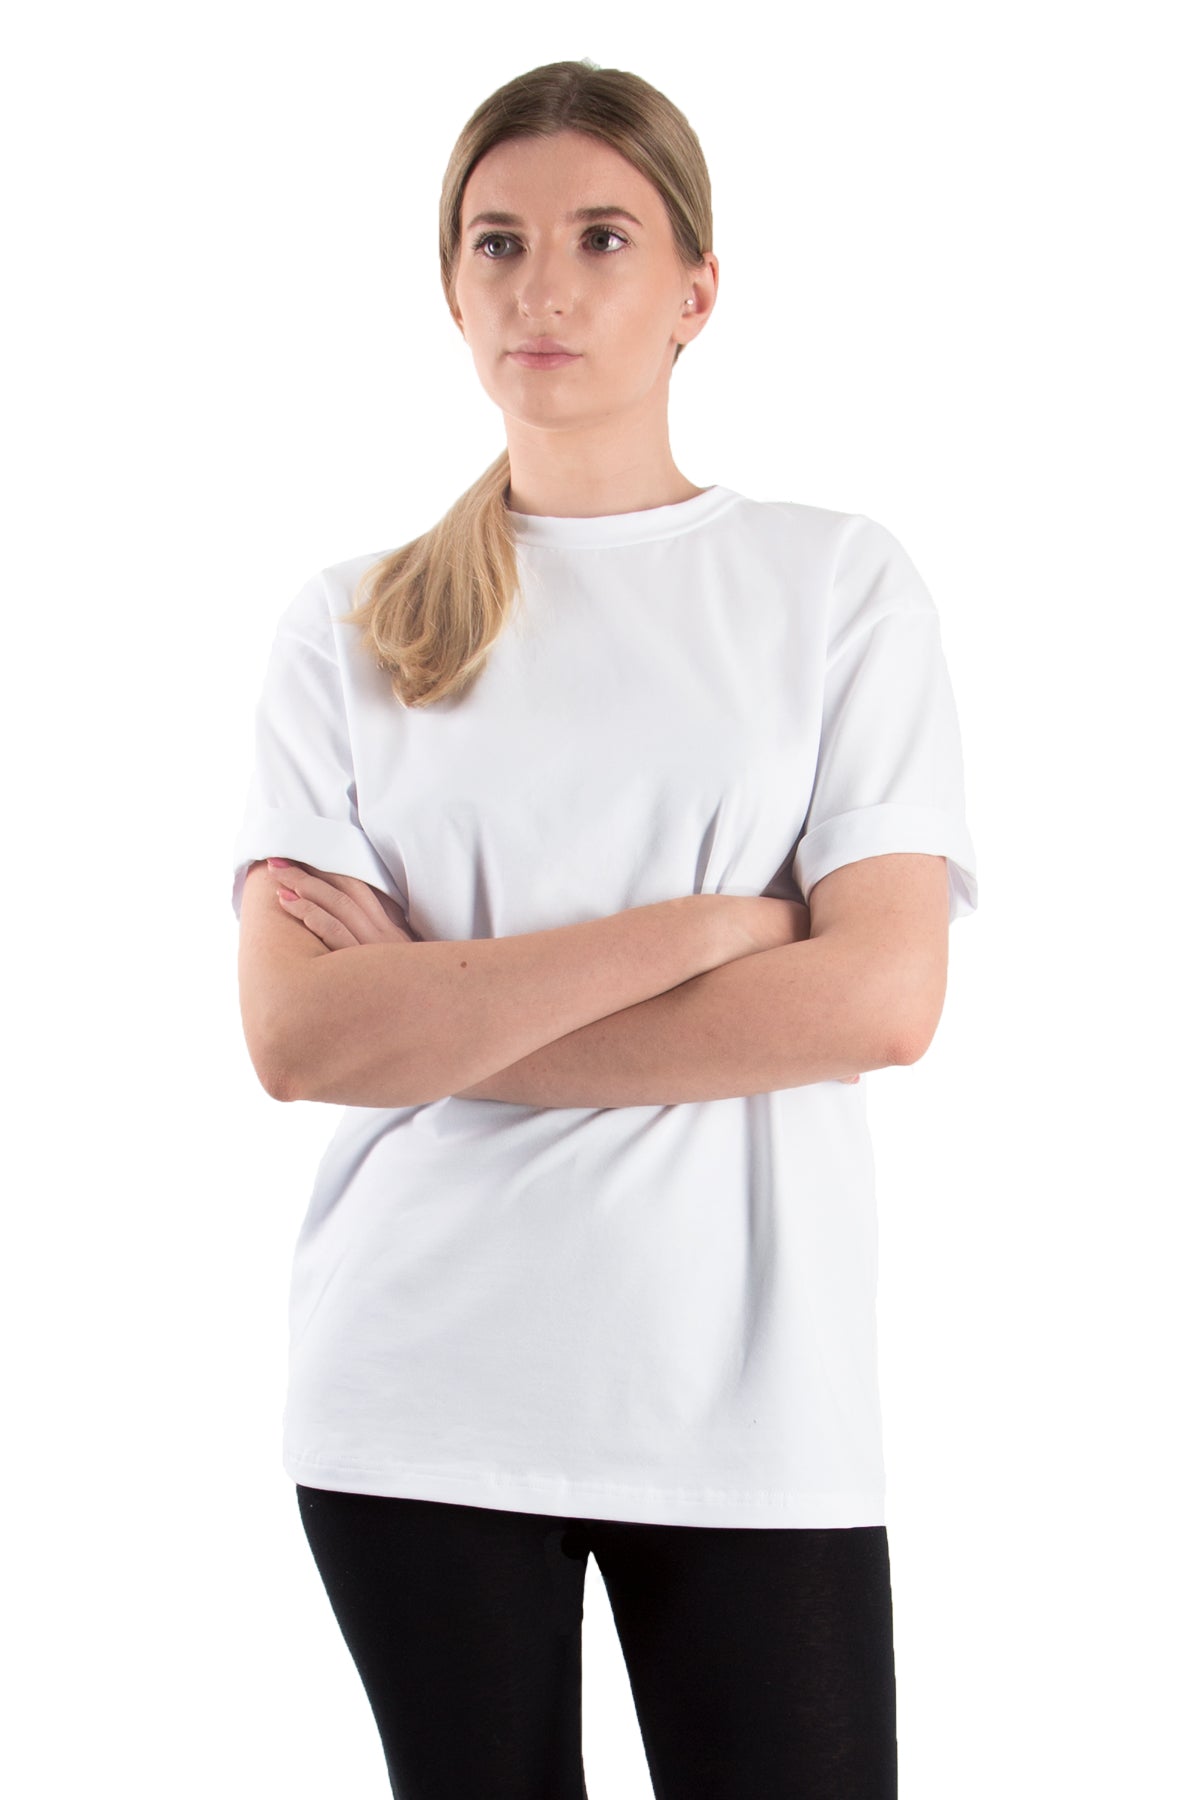 T-Shirt Oversized (10er-Pack) - bordeaux